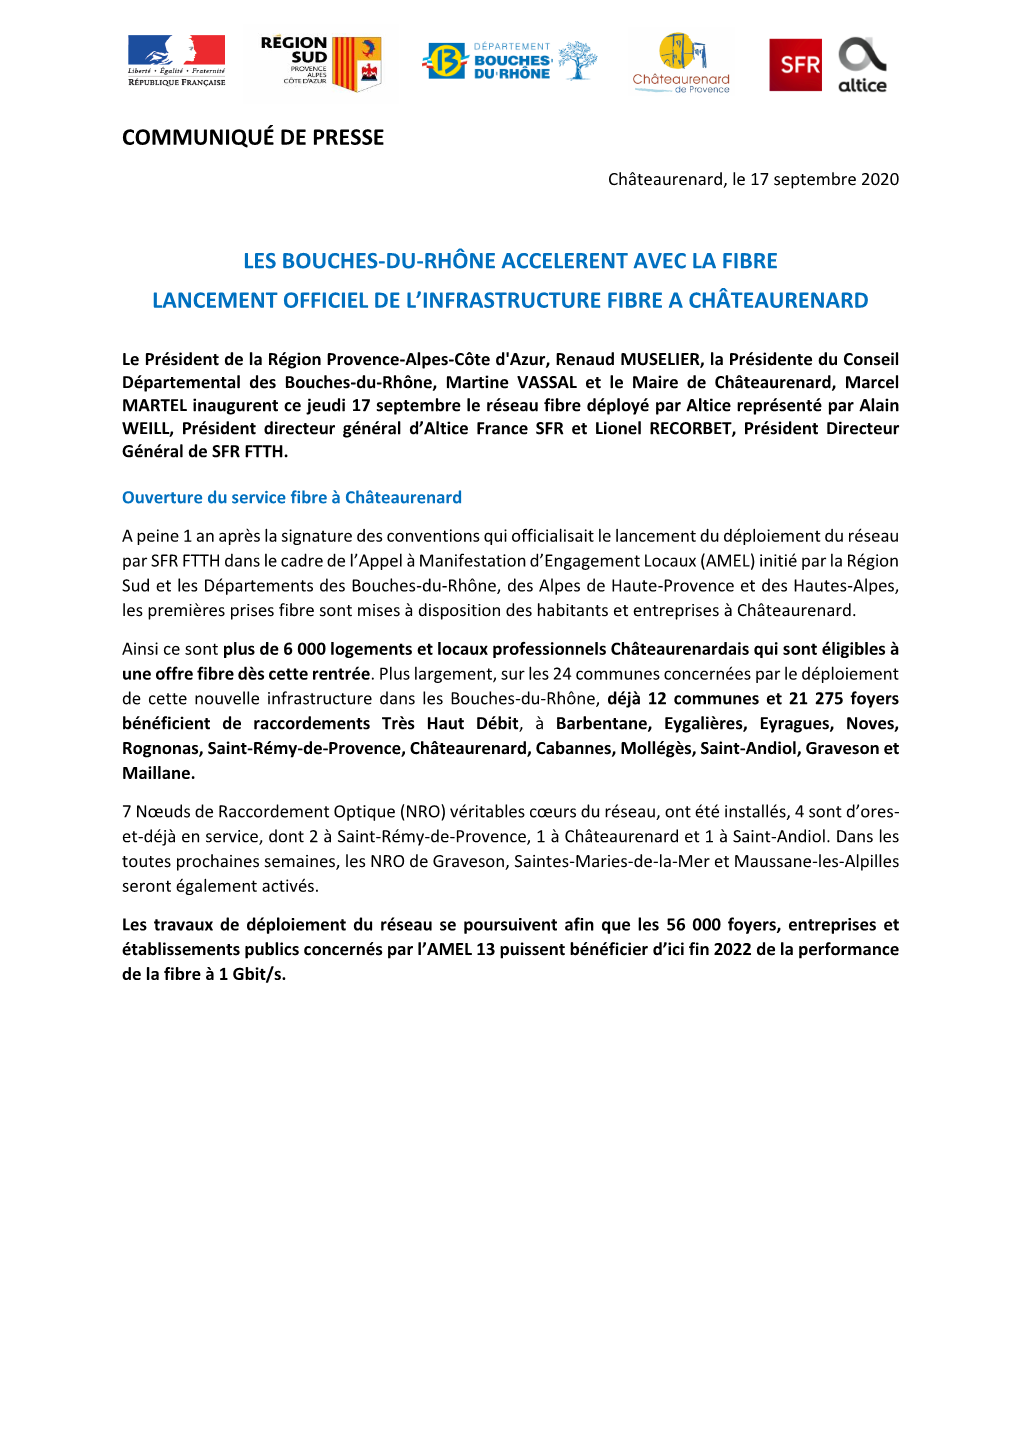 Les Bouches-Du-Rhône Accelerent Avec La Fibre Lancement Officiel De L’Infrastructure Fibre a Châteaurenard